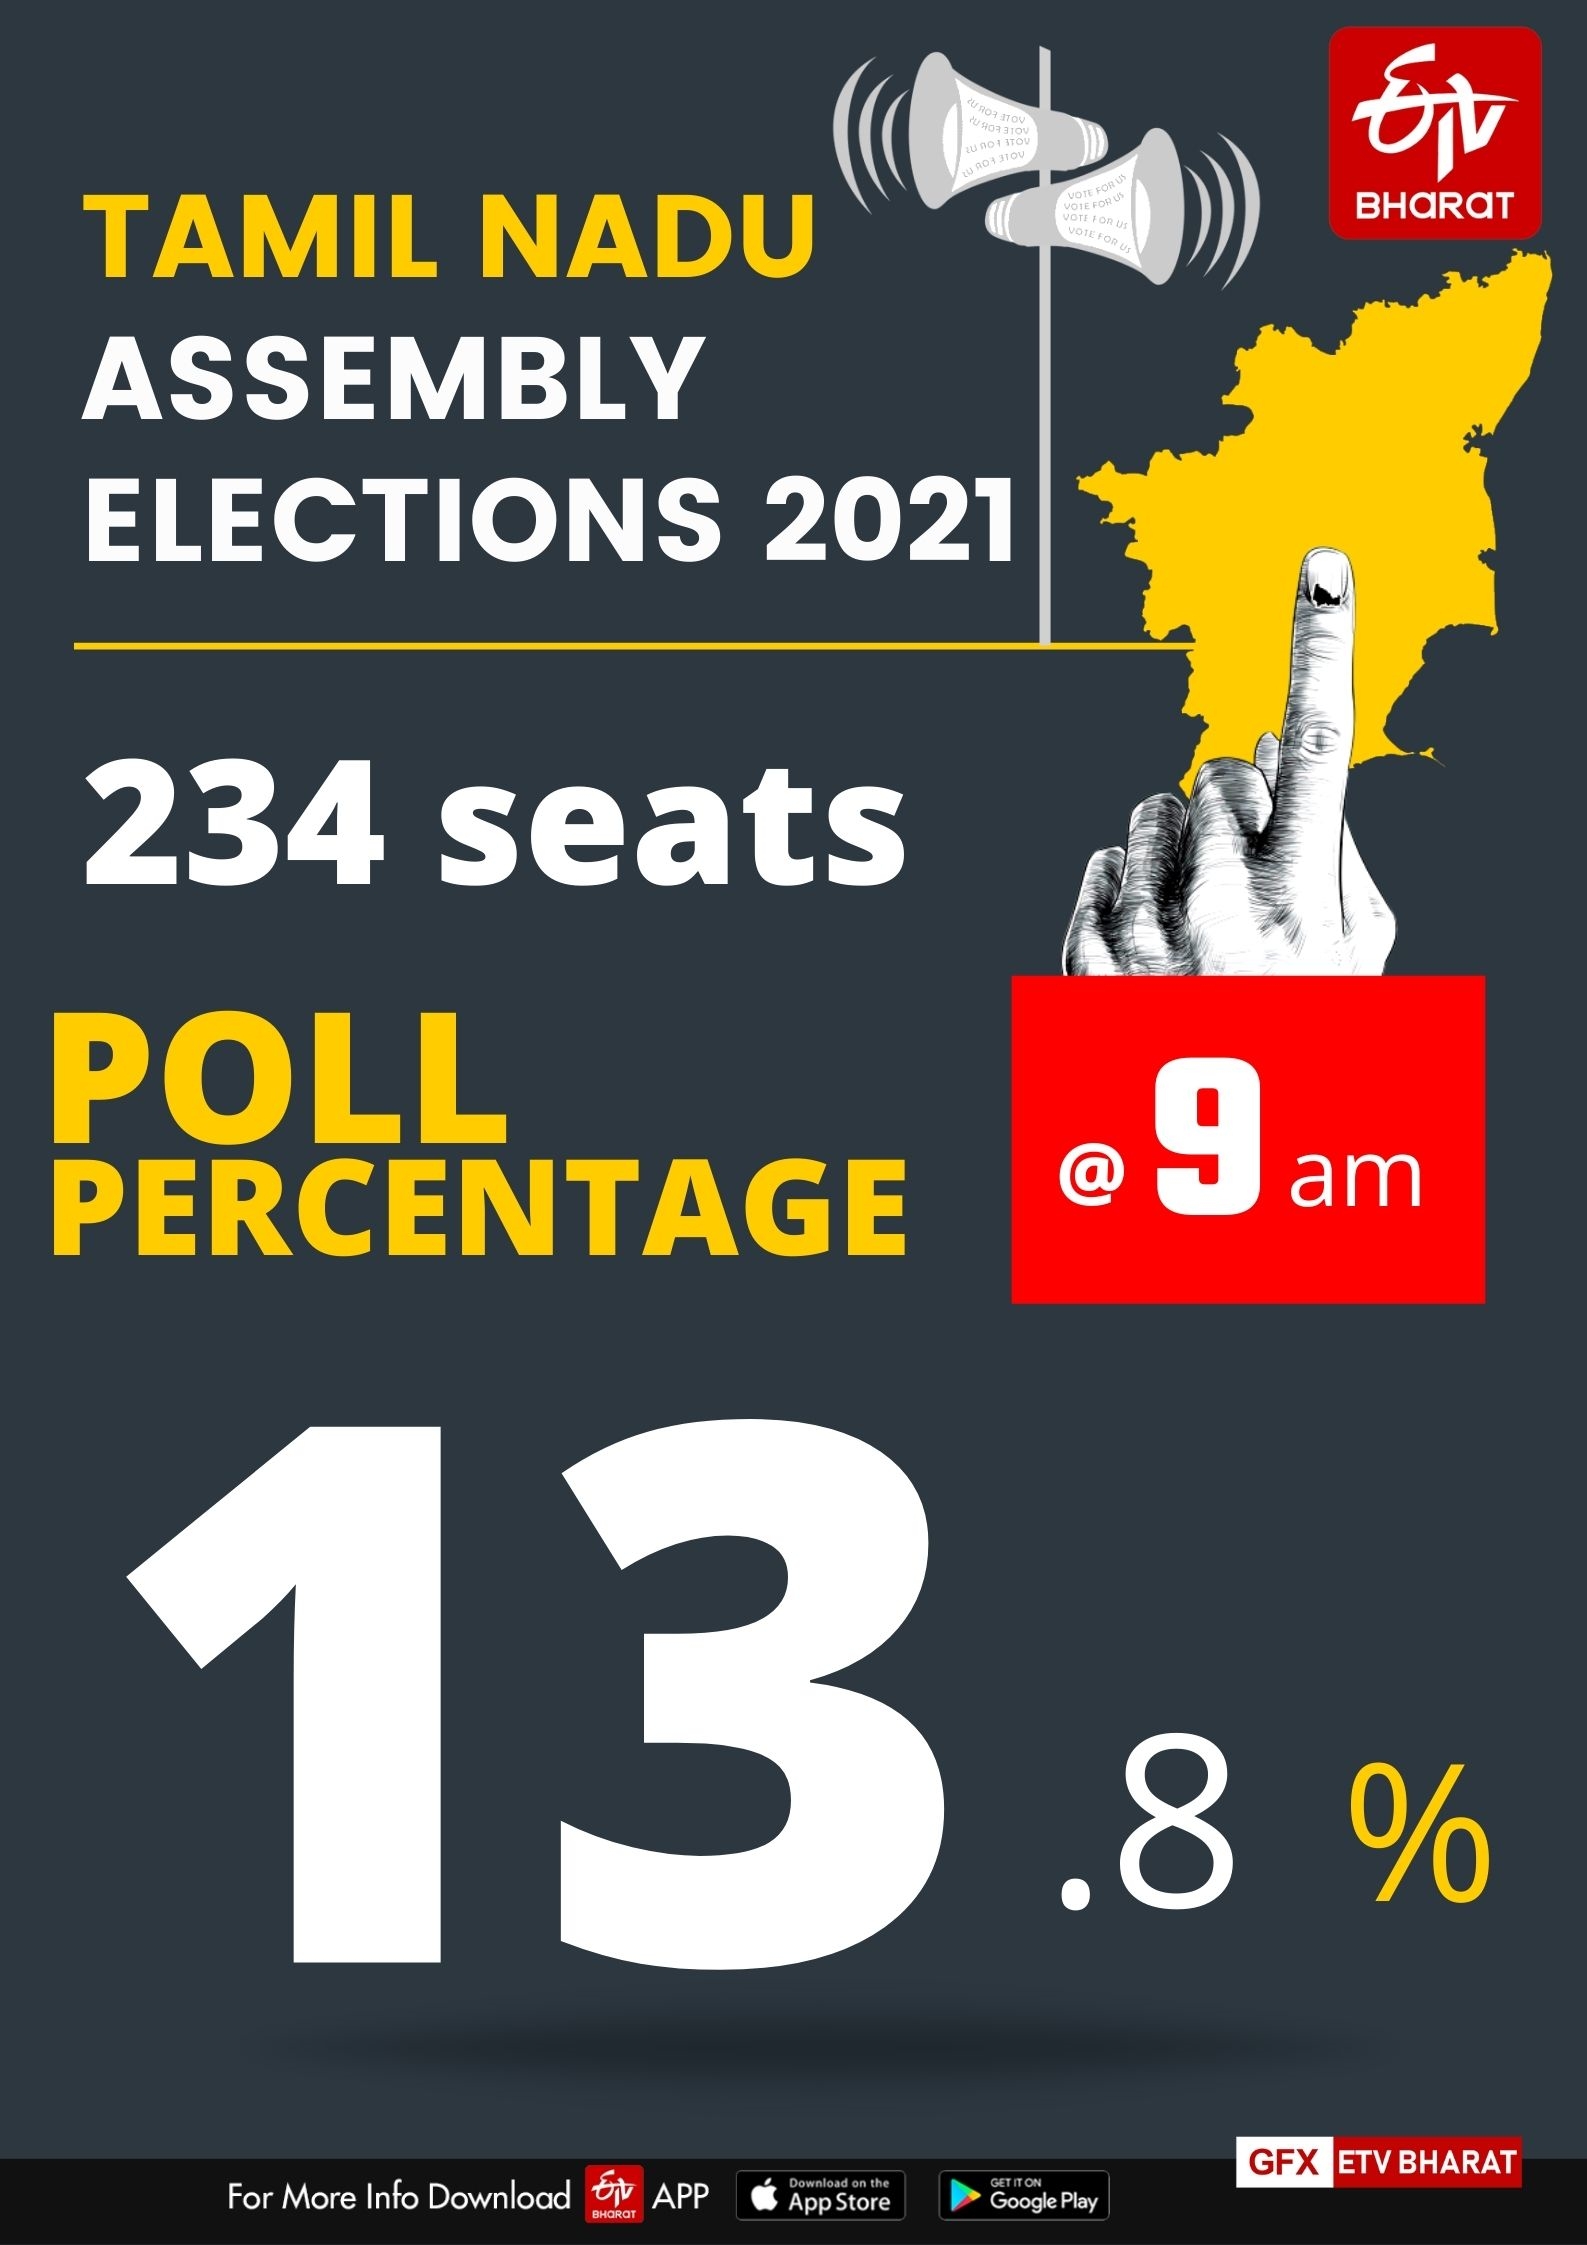 Tamil Nadu poll percentage at 9